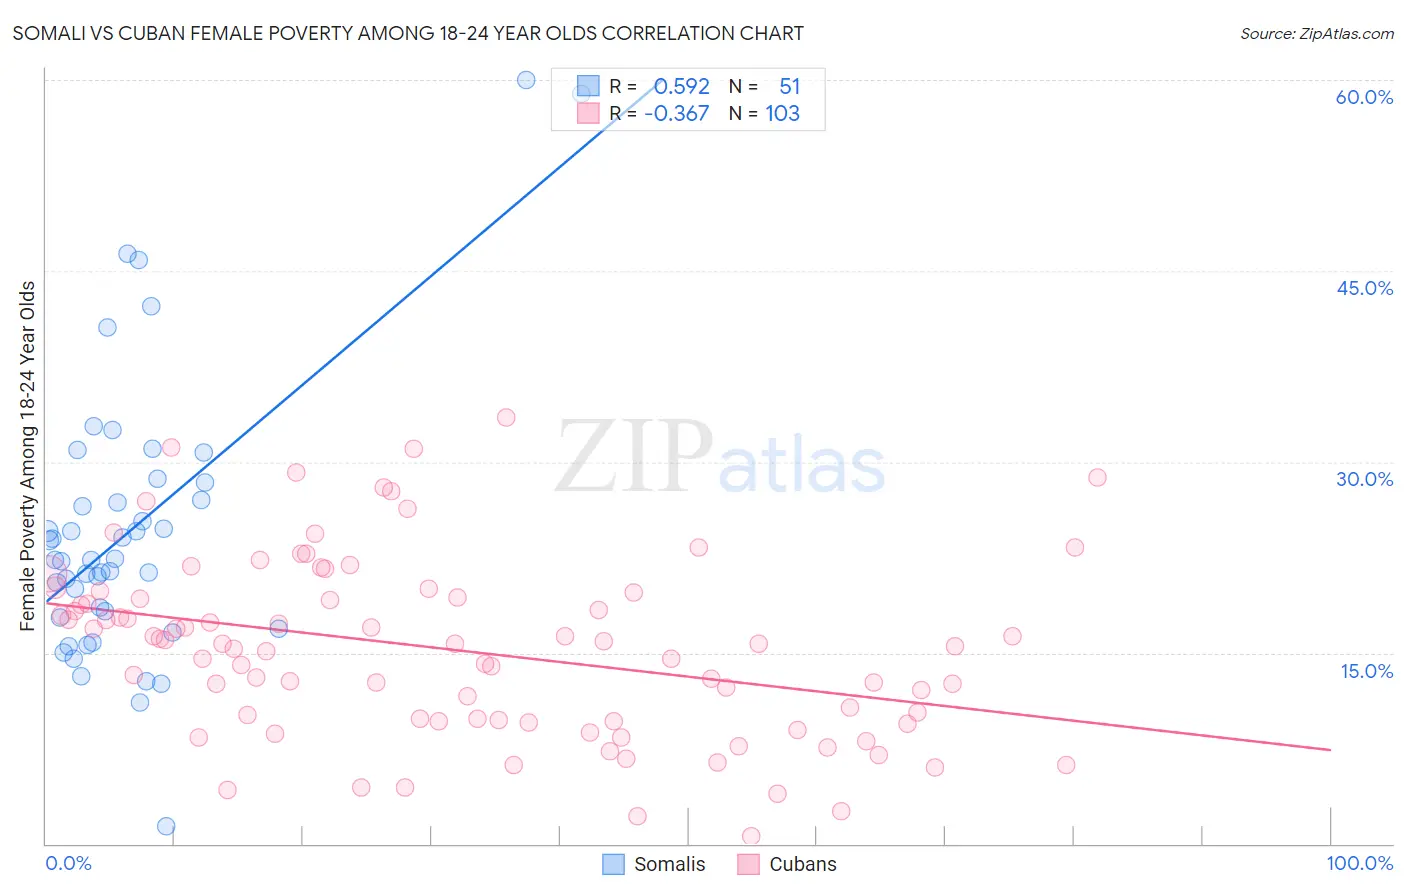 Somali vs Cuban Female Poverty Among 18-24 Year Olds